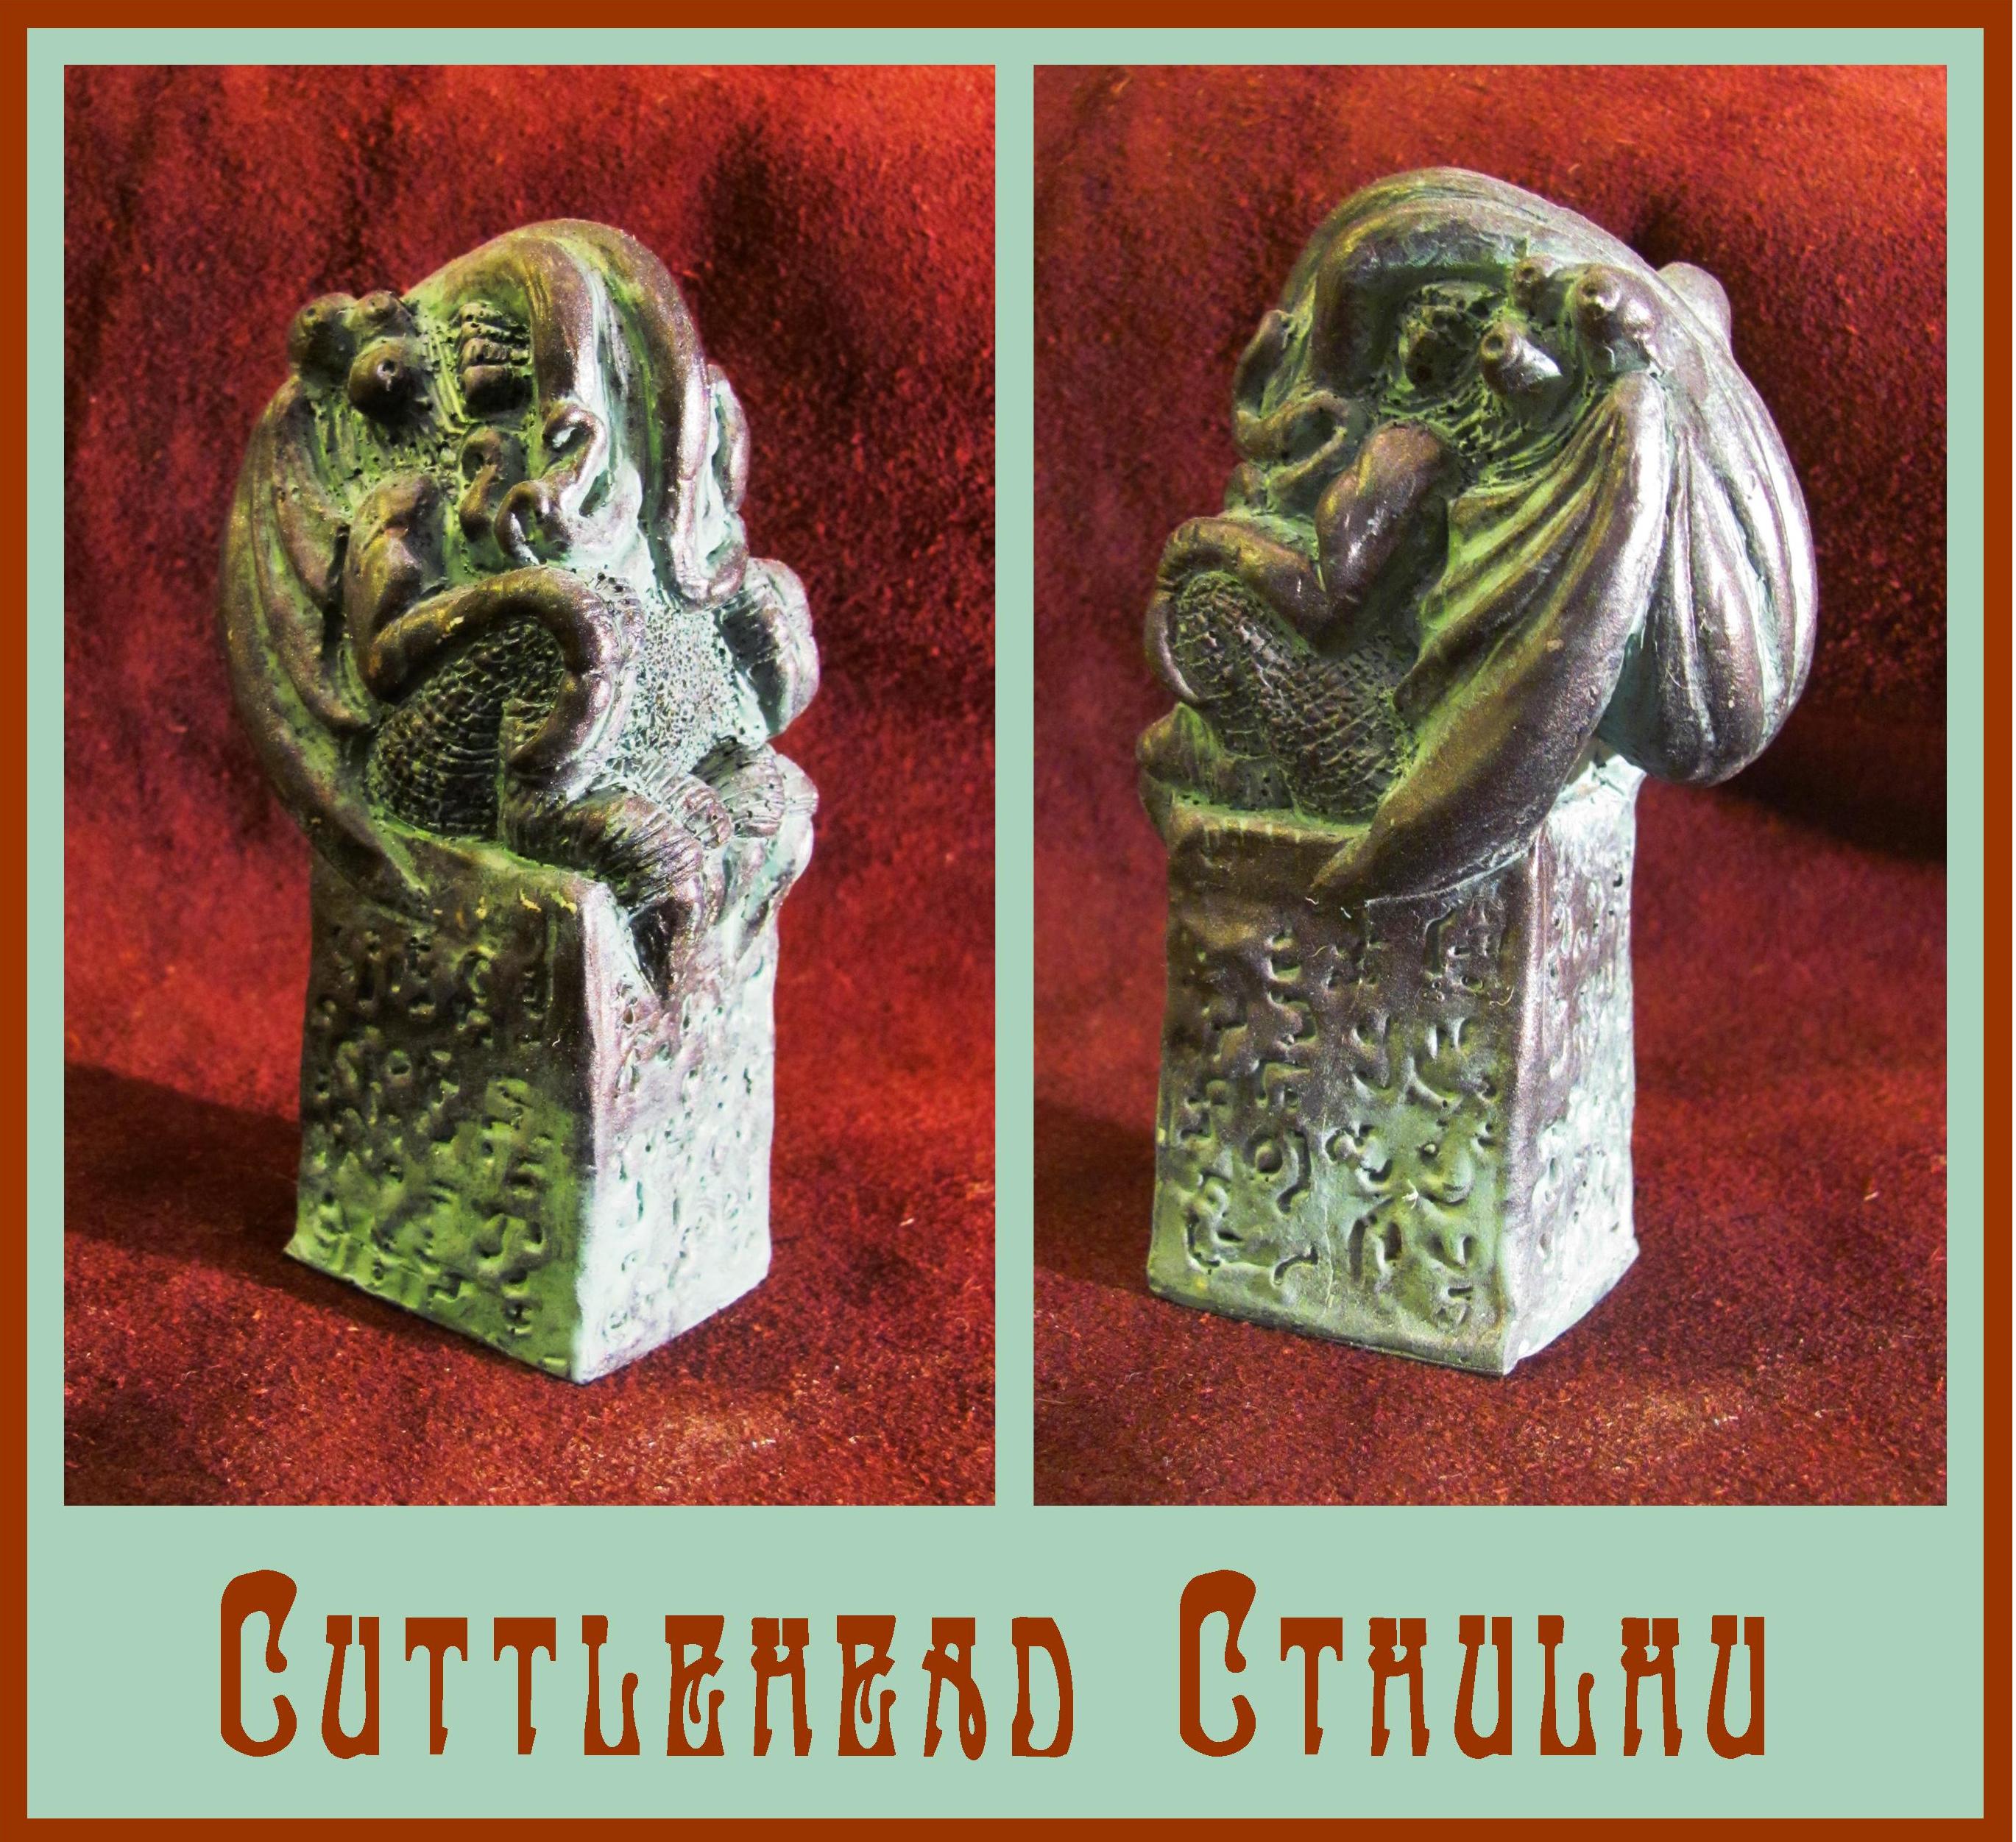 Cuttlehead Cthulhu